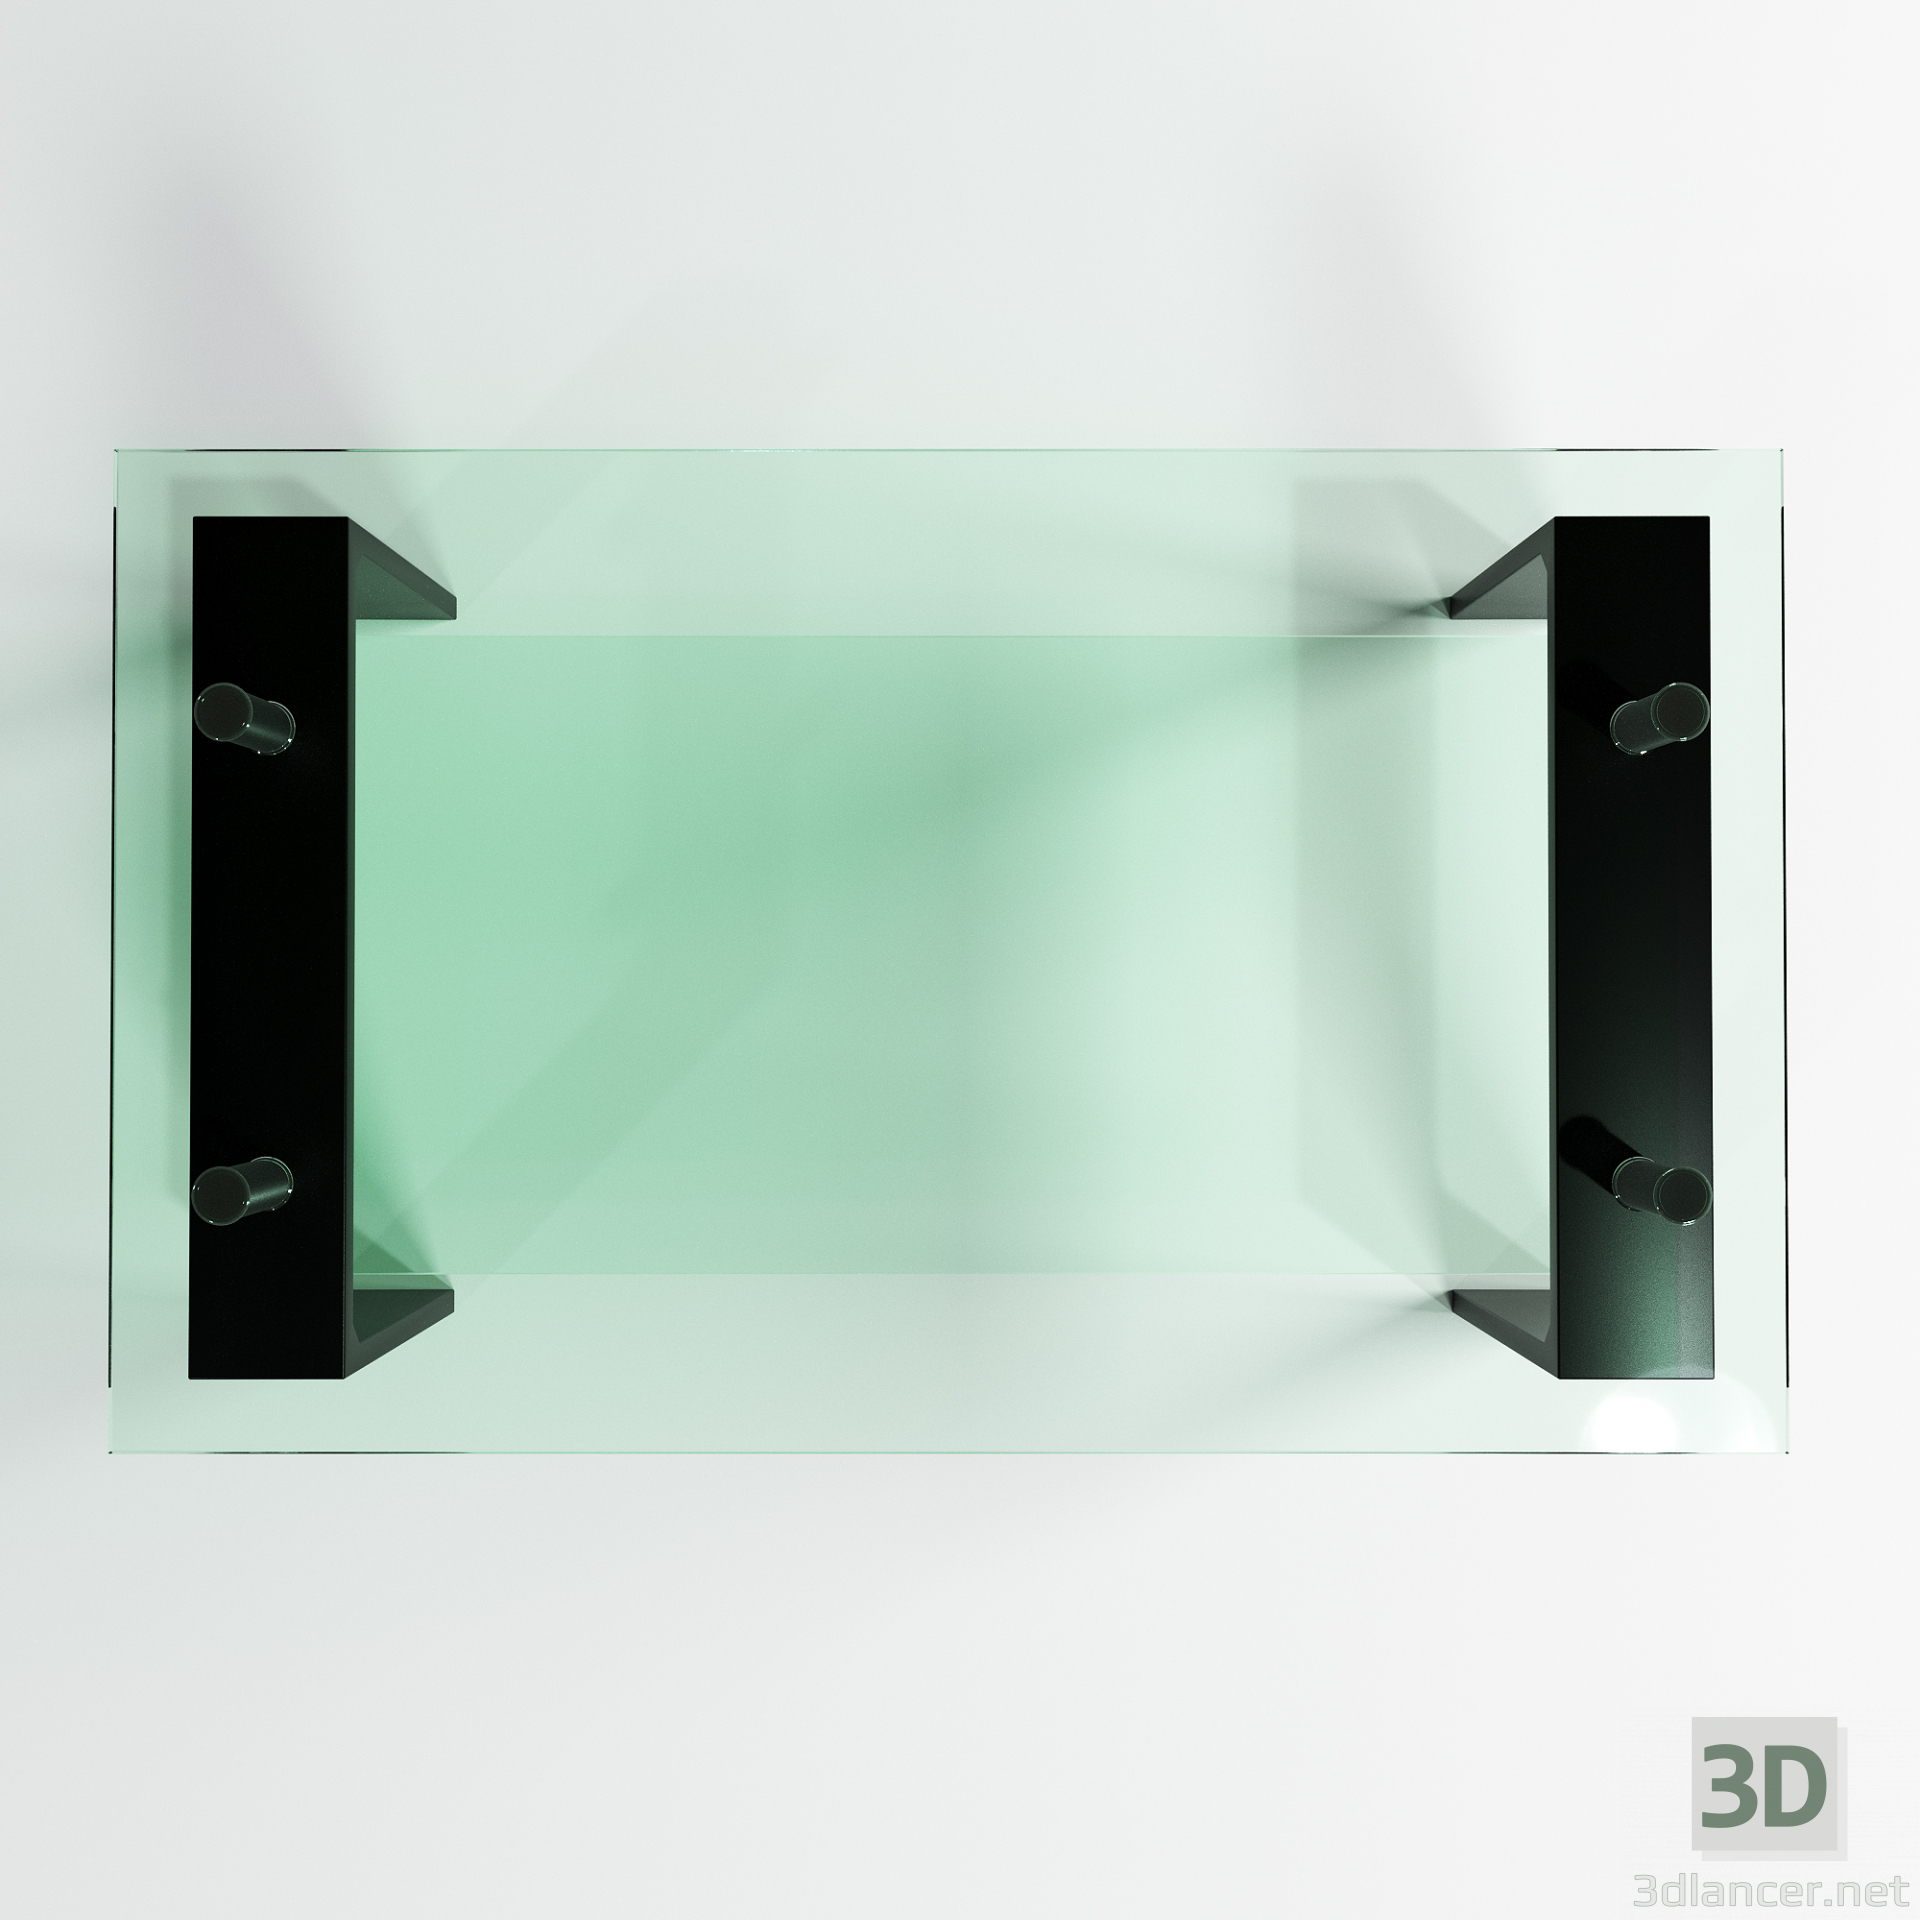 3d glass table model buy - render